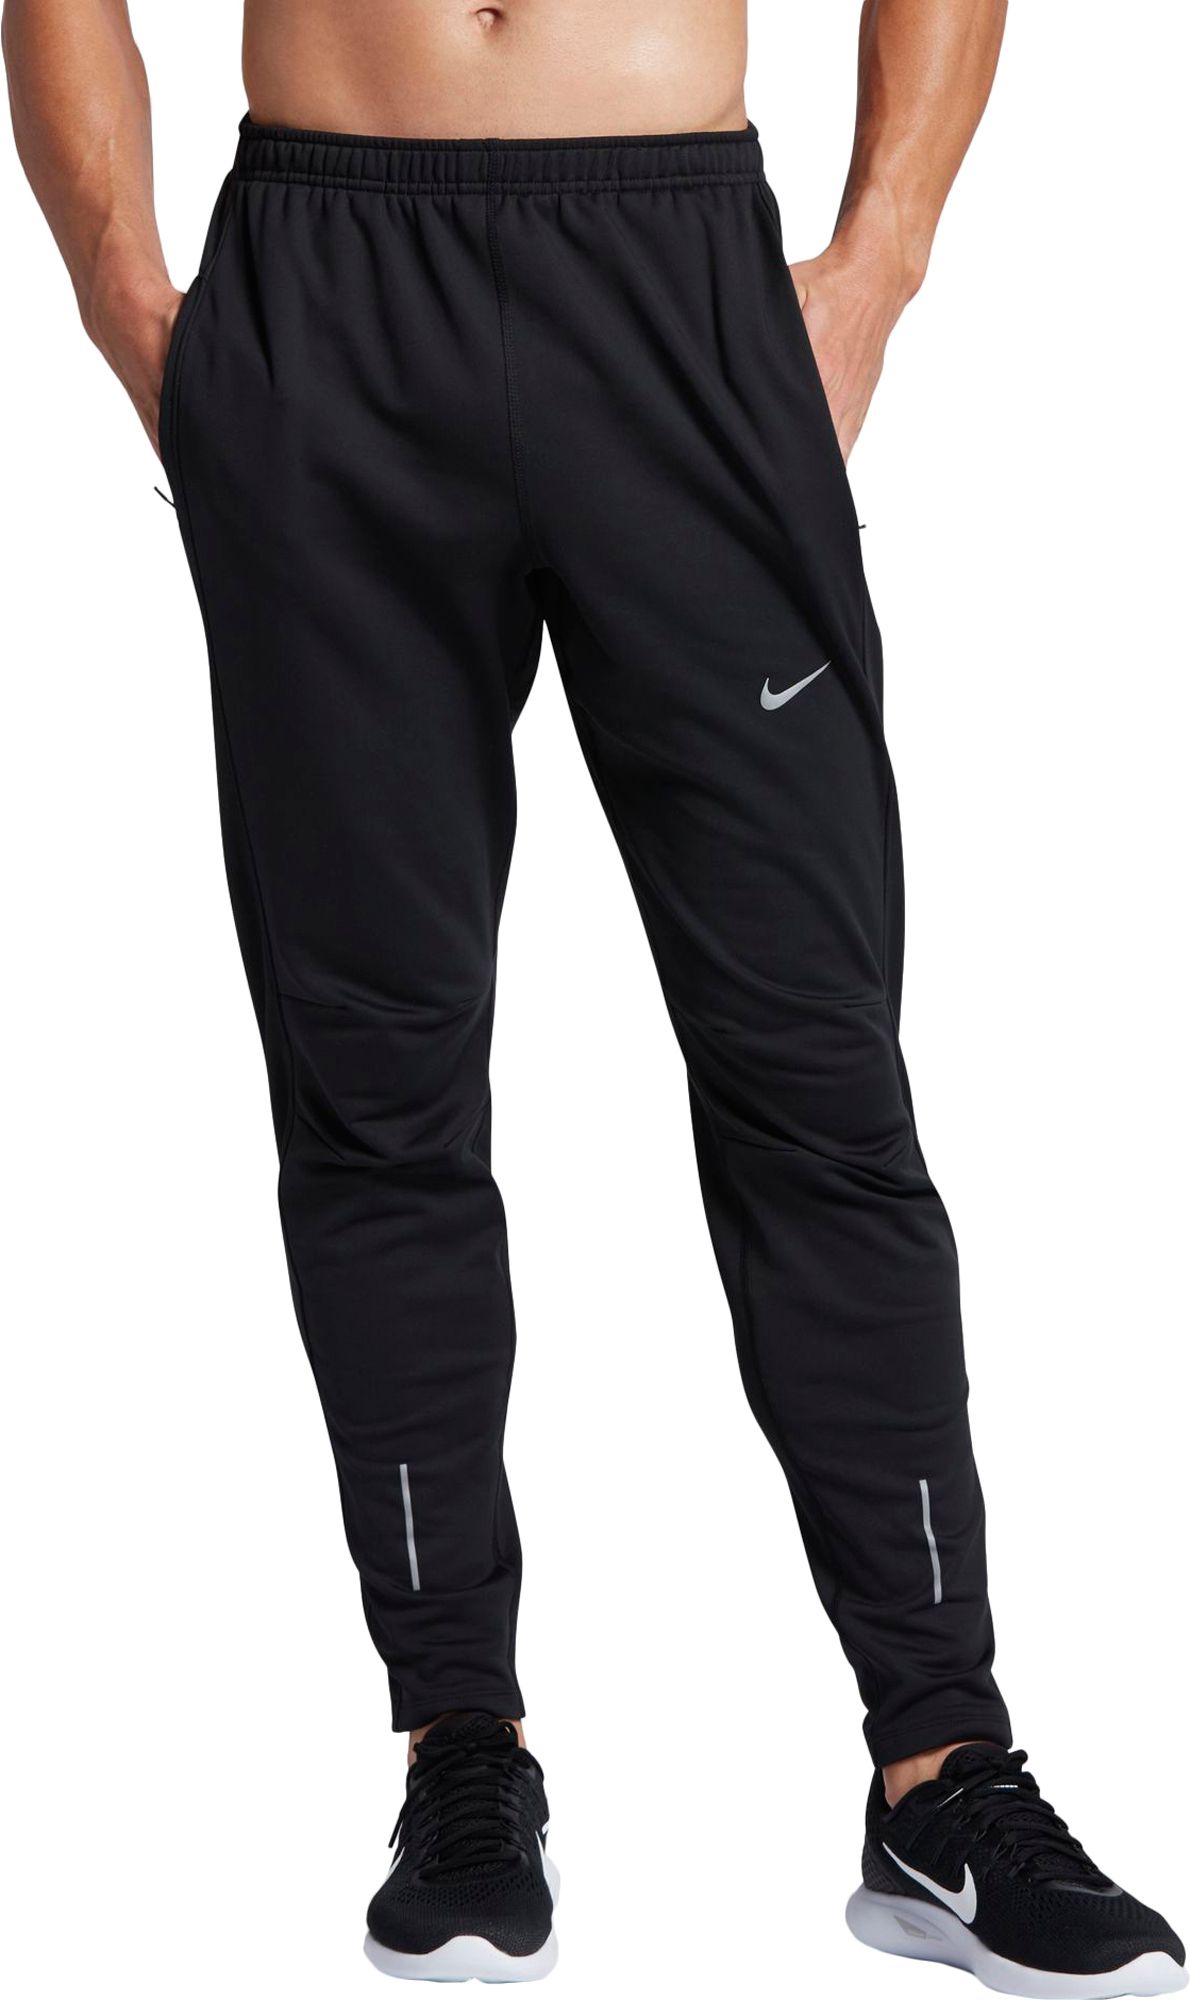 Nike Nylon Running Pants For Men | The River City News